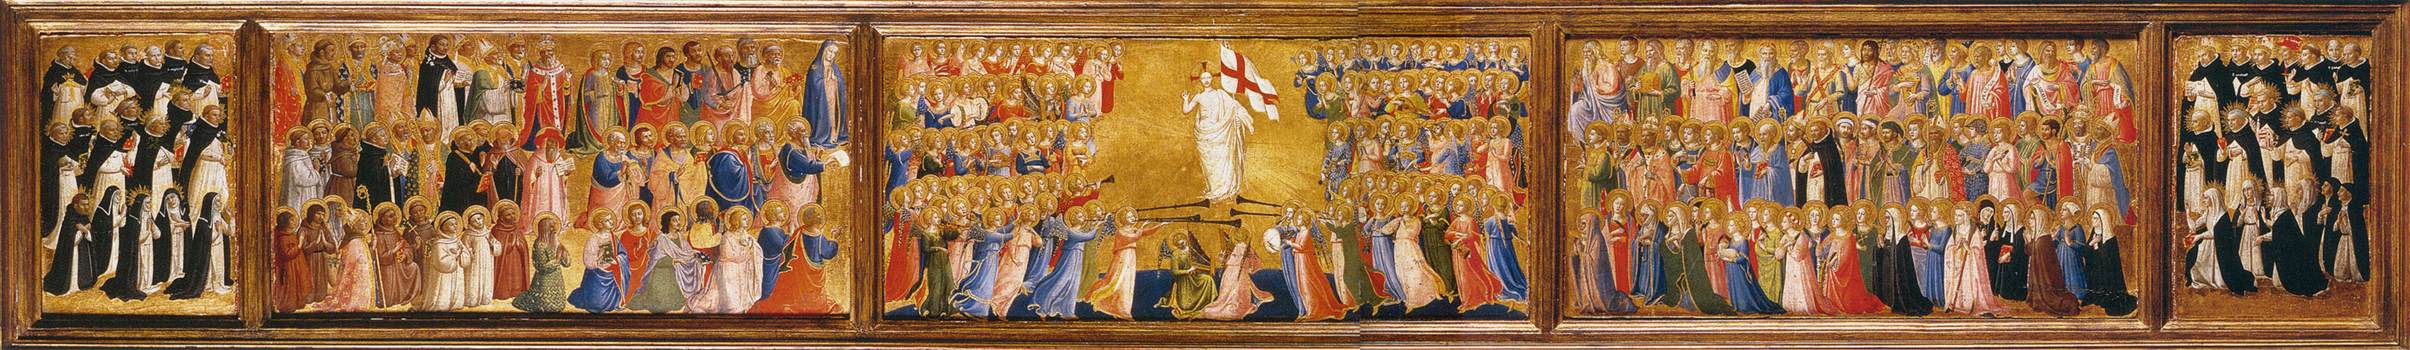 《圣多米尼克祭坛画》安杰利科修士知名作品赏析-我的学习汇总